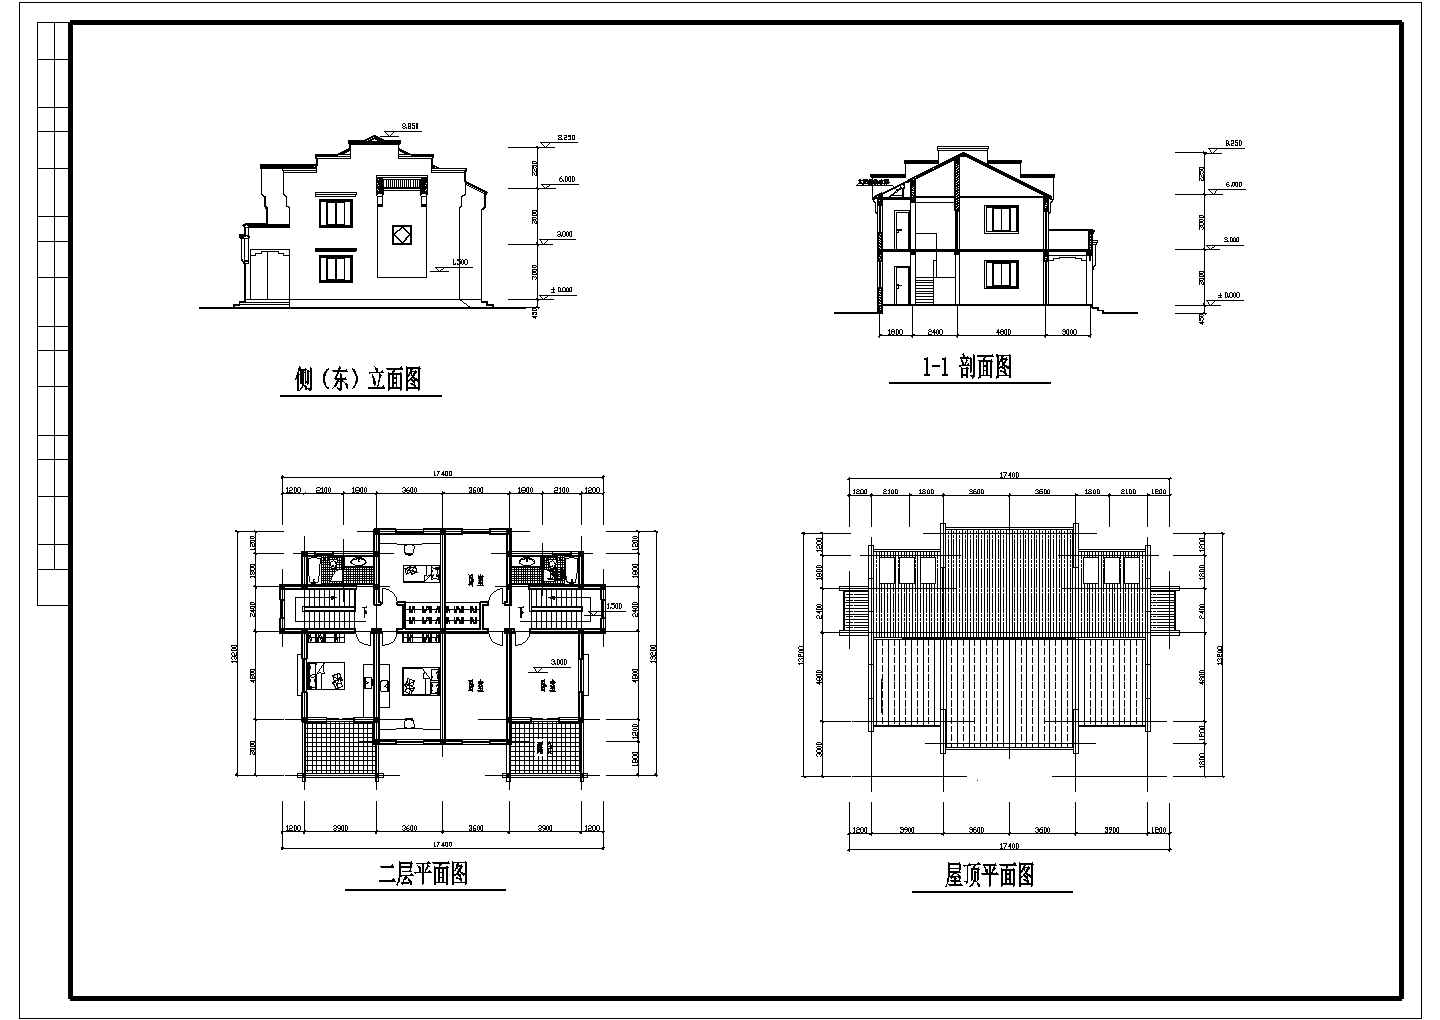 苏州某自建农村小康住宅全套建筑方案图(含屋顶平面图)